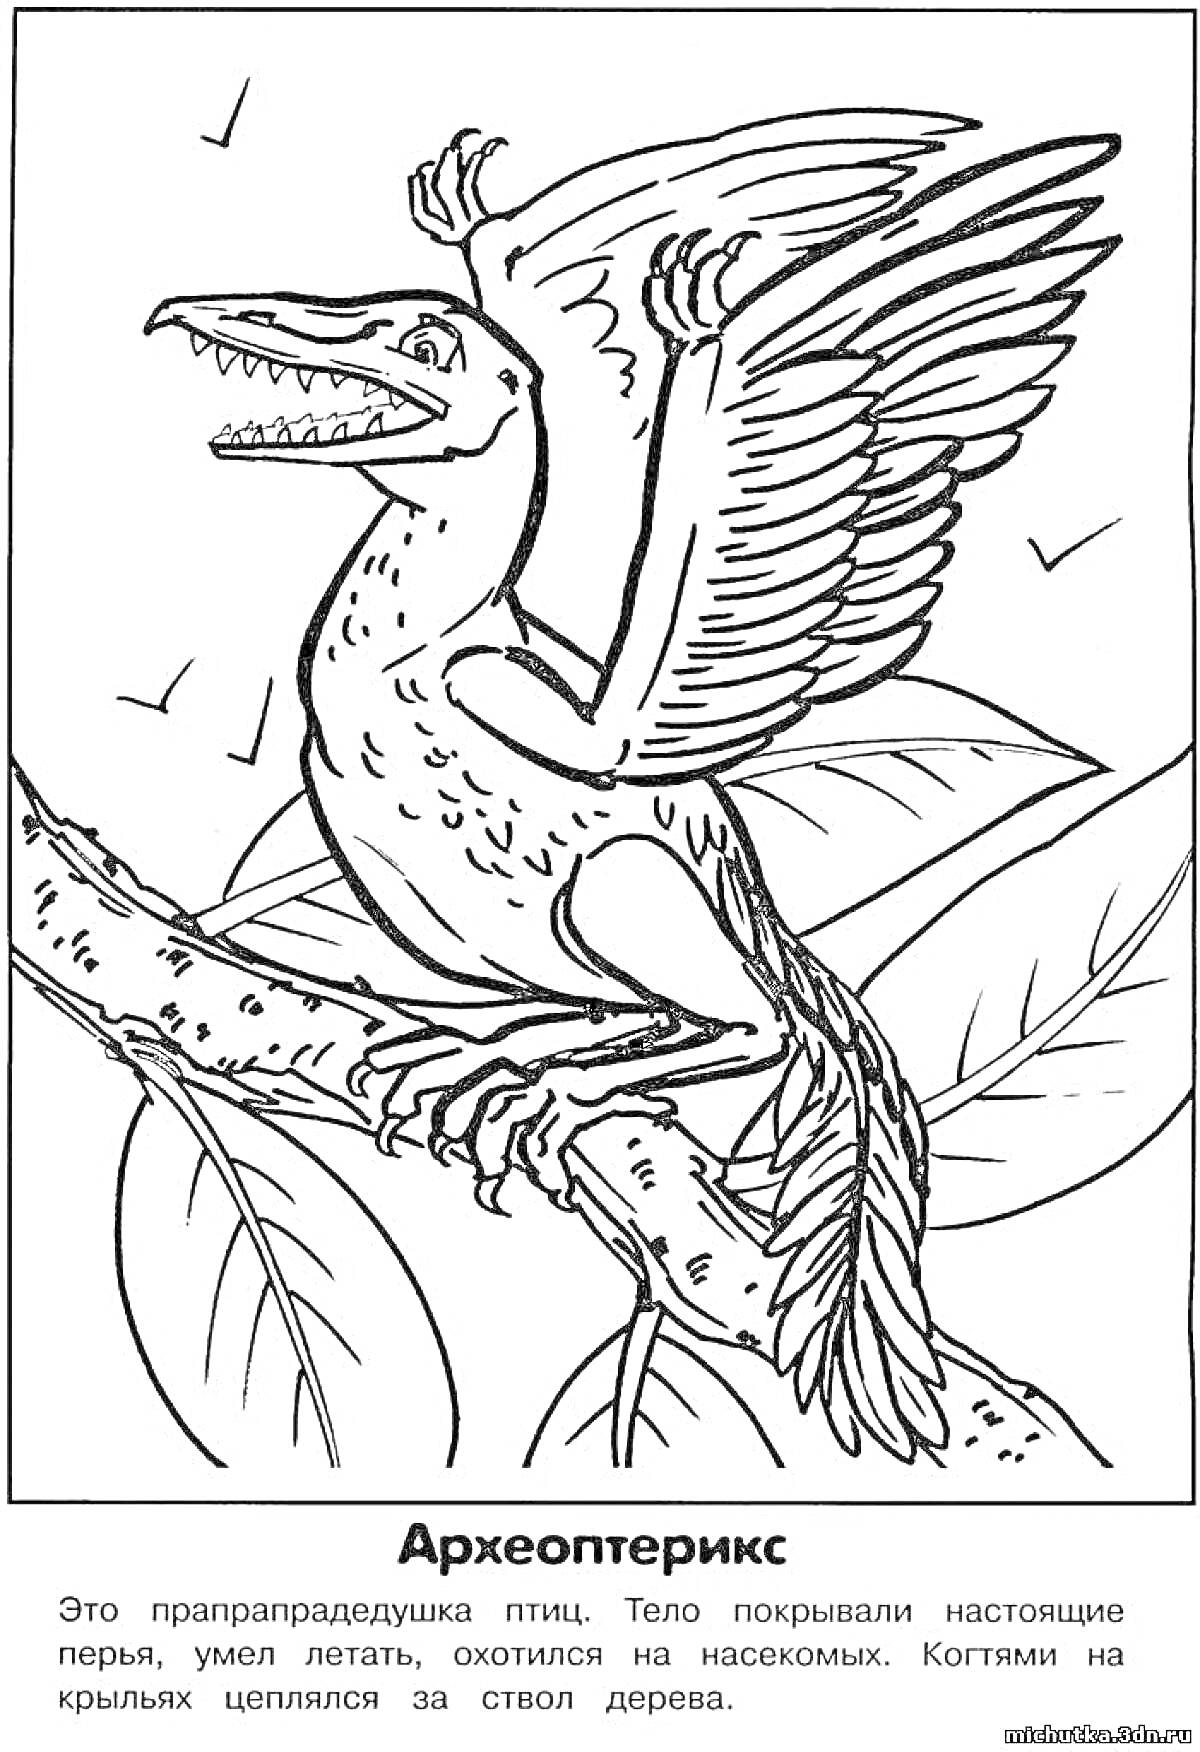 Археоптерикс, сидящий на ветке дерева с растопыренными крыльями и открытой пастью